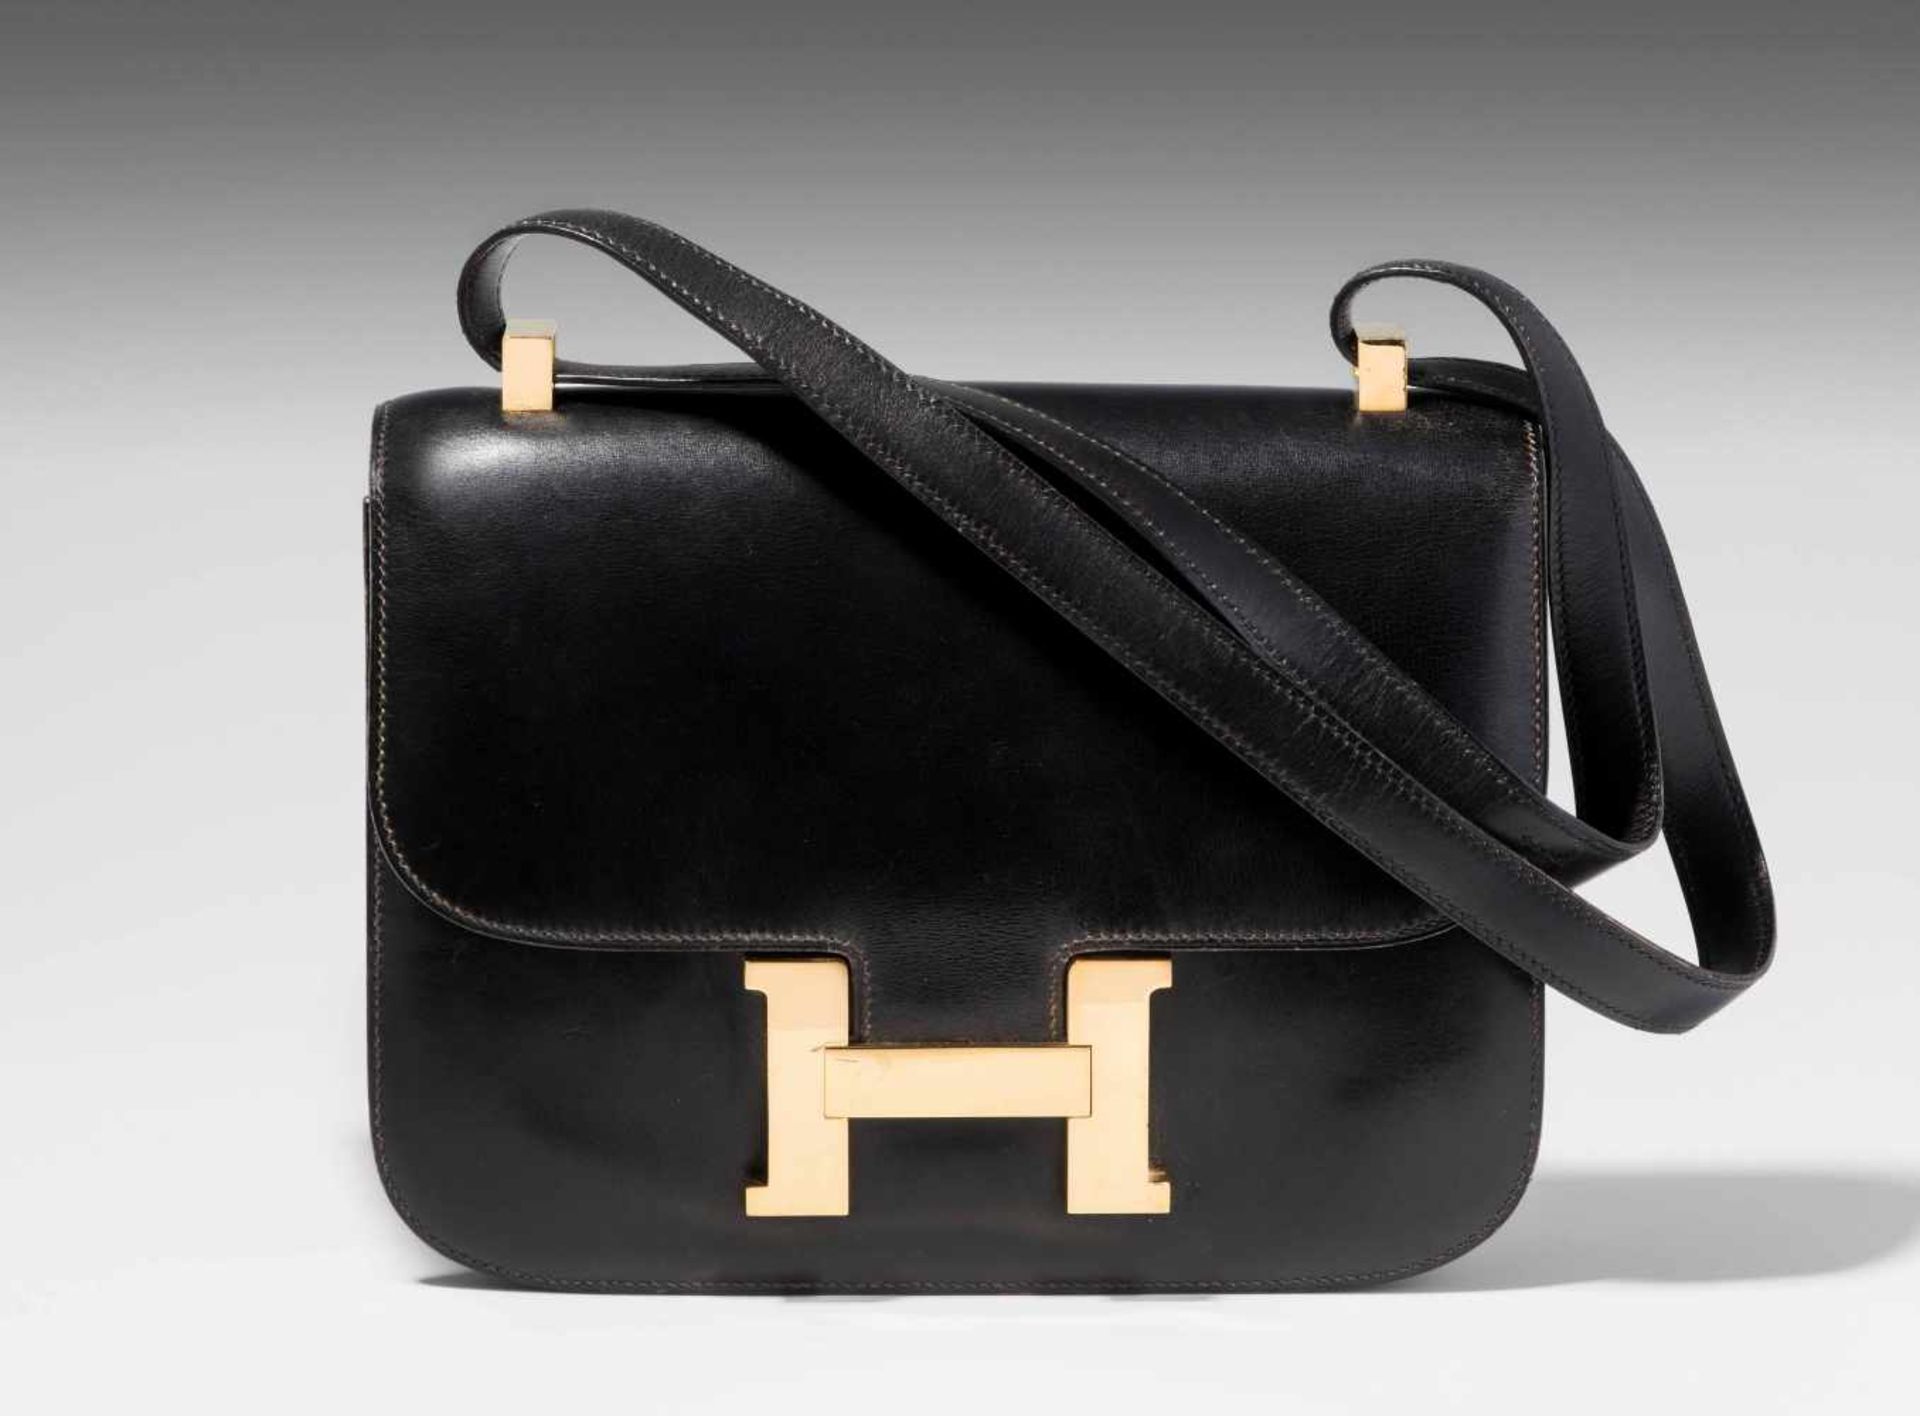 Hermès, Handtasche "Constance" Gemarkt Hermès Paris made in France. Aus schwarzem Leder. "H"-